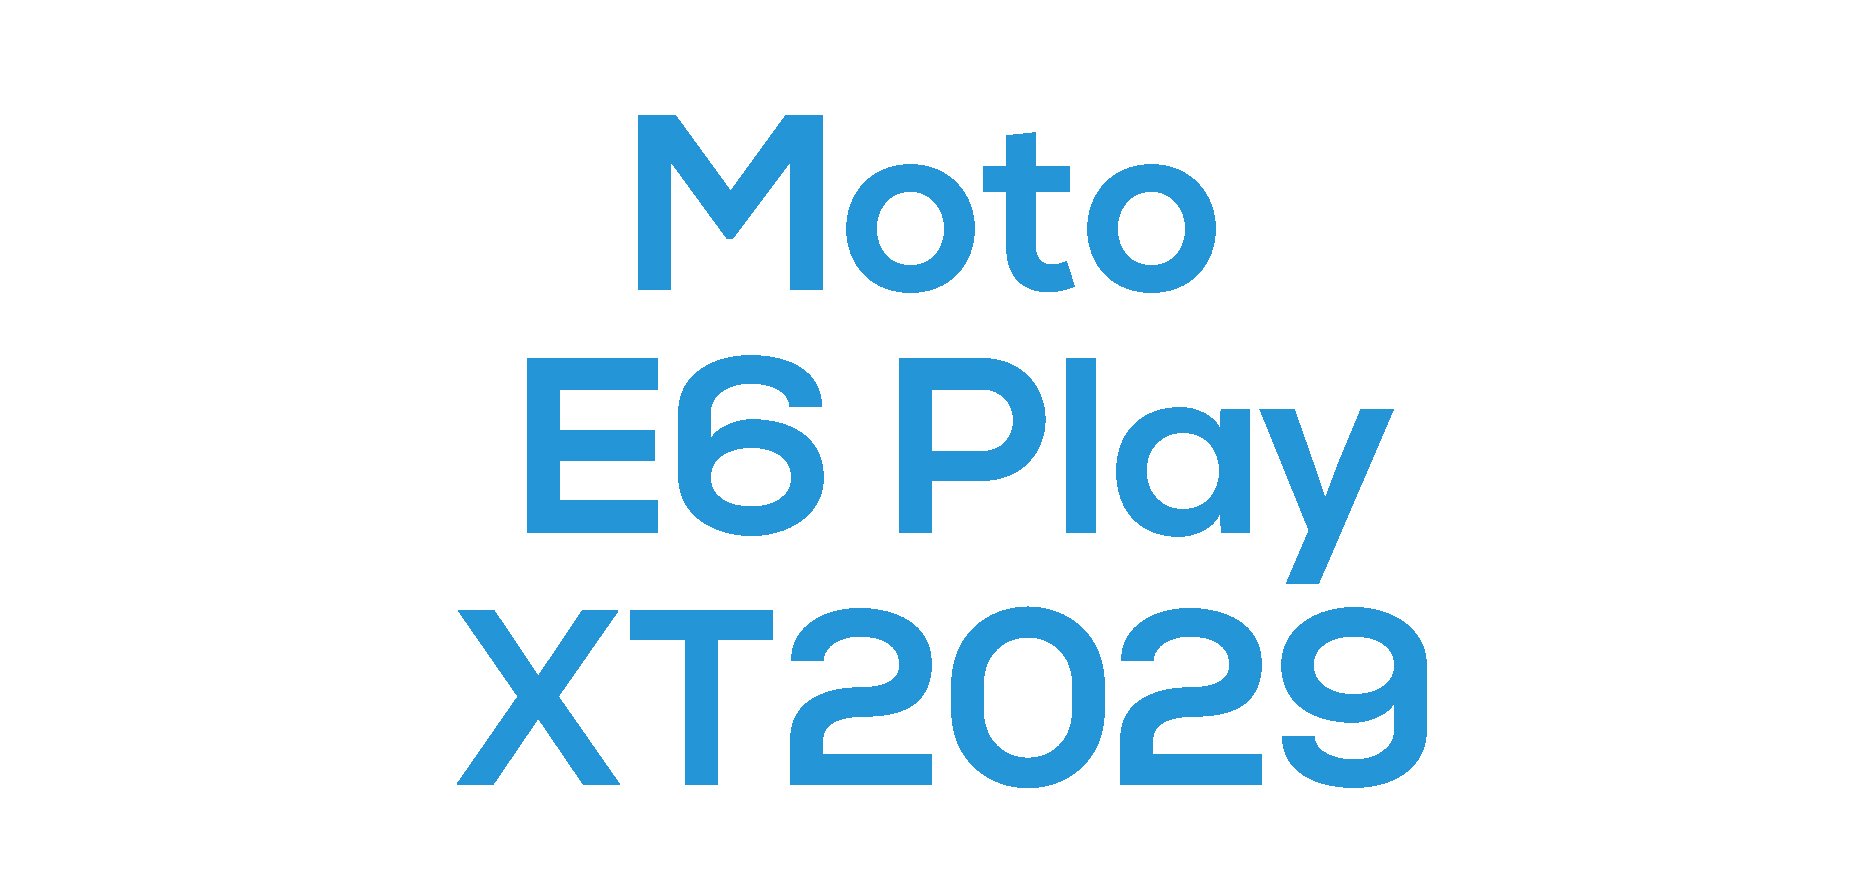 E6 Play 2019 (XT2029)